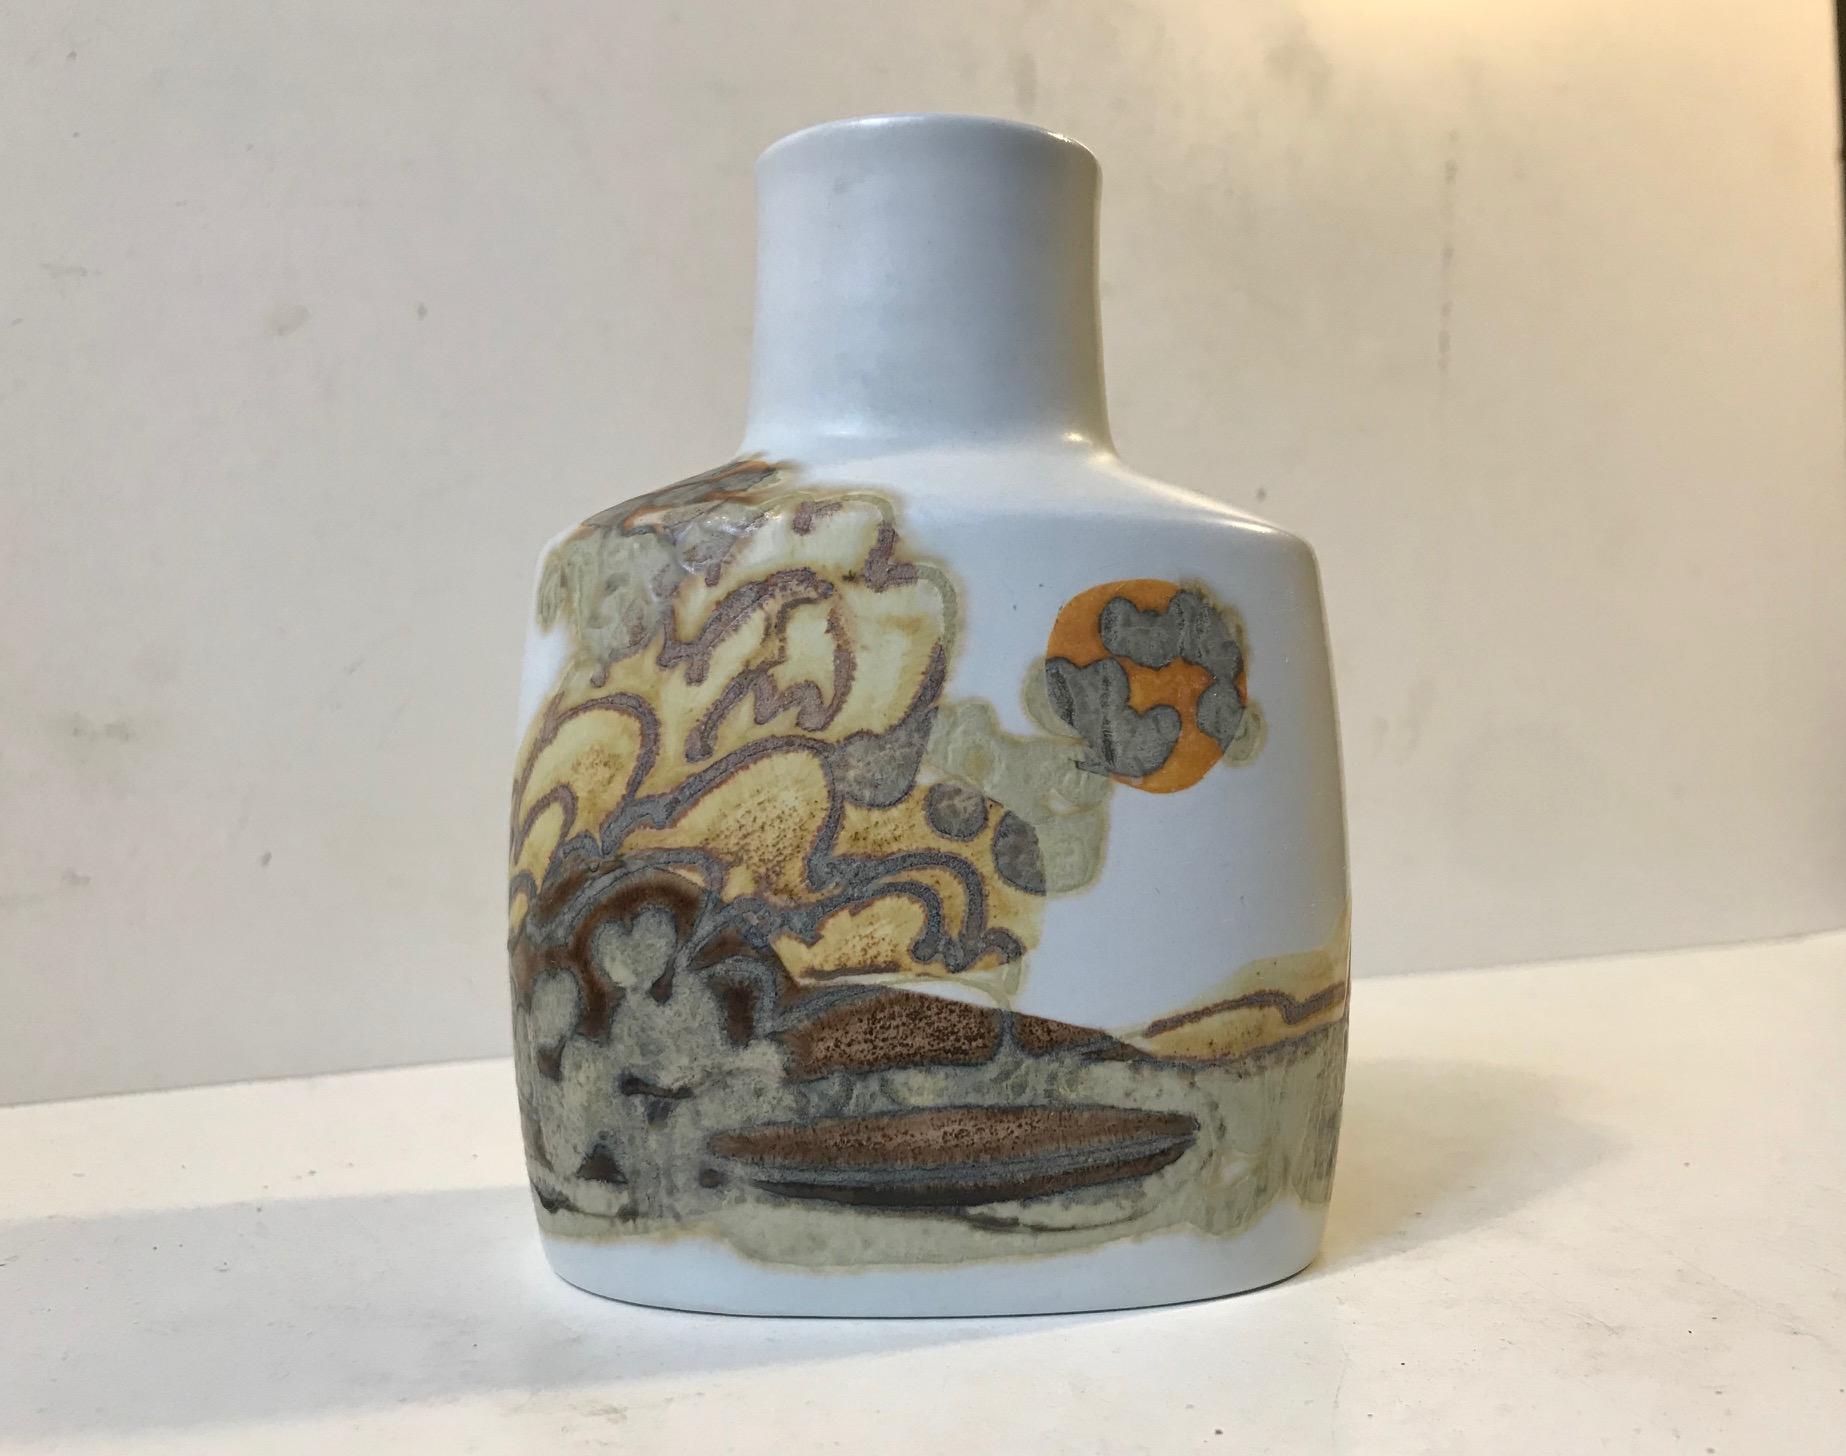 Fayence-Vase mit glasiertem abstrakt-modernistischem Motiv in kontrastierenden Glasuren. Entworfen von der dänischen Keramikerin Ellen Malmer (EM) und hergestellt von Royal Copenhagen in den 1970er Jahren. Vollständig signiert, nummeriert und auf